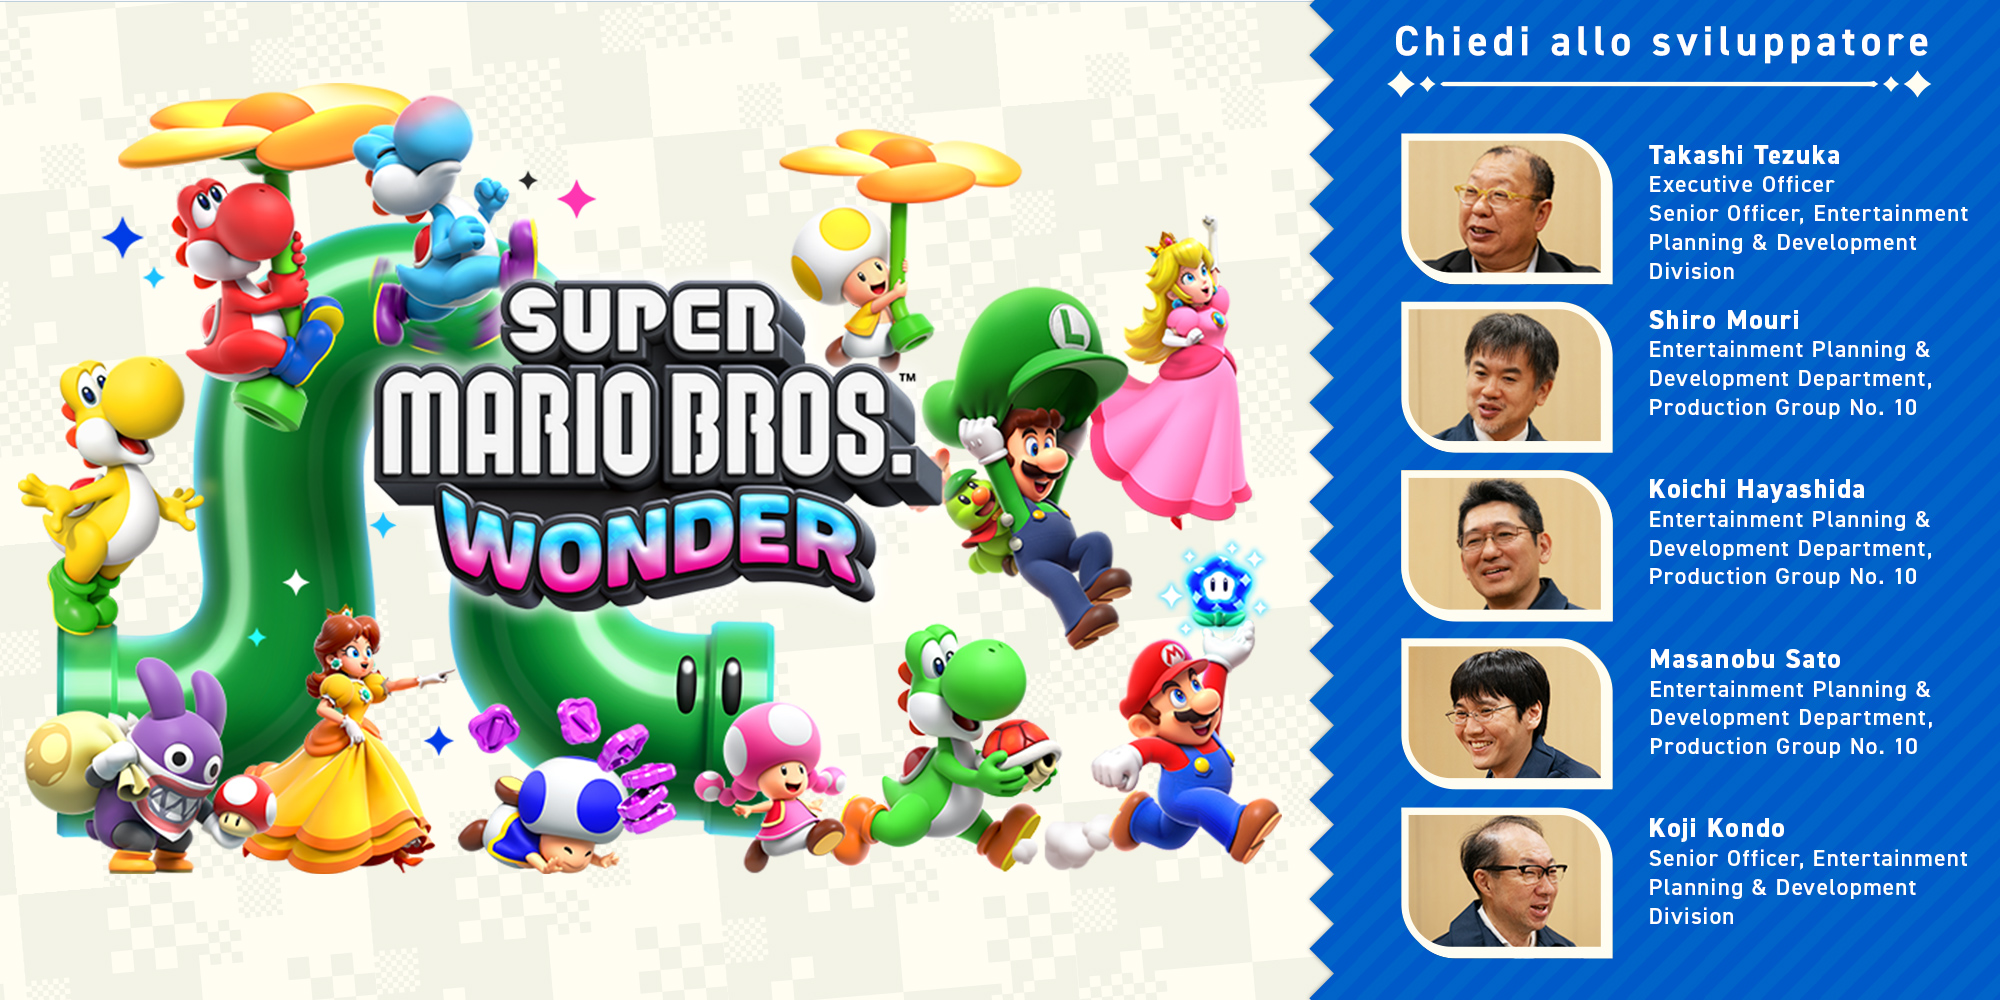 Chiedi allo sviluppatore, parte 11: Super Mario Bros. Wonder – Capitolo 4